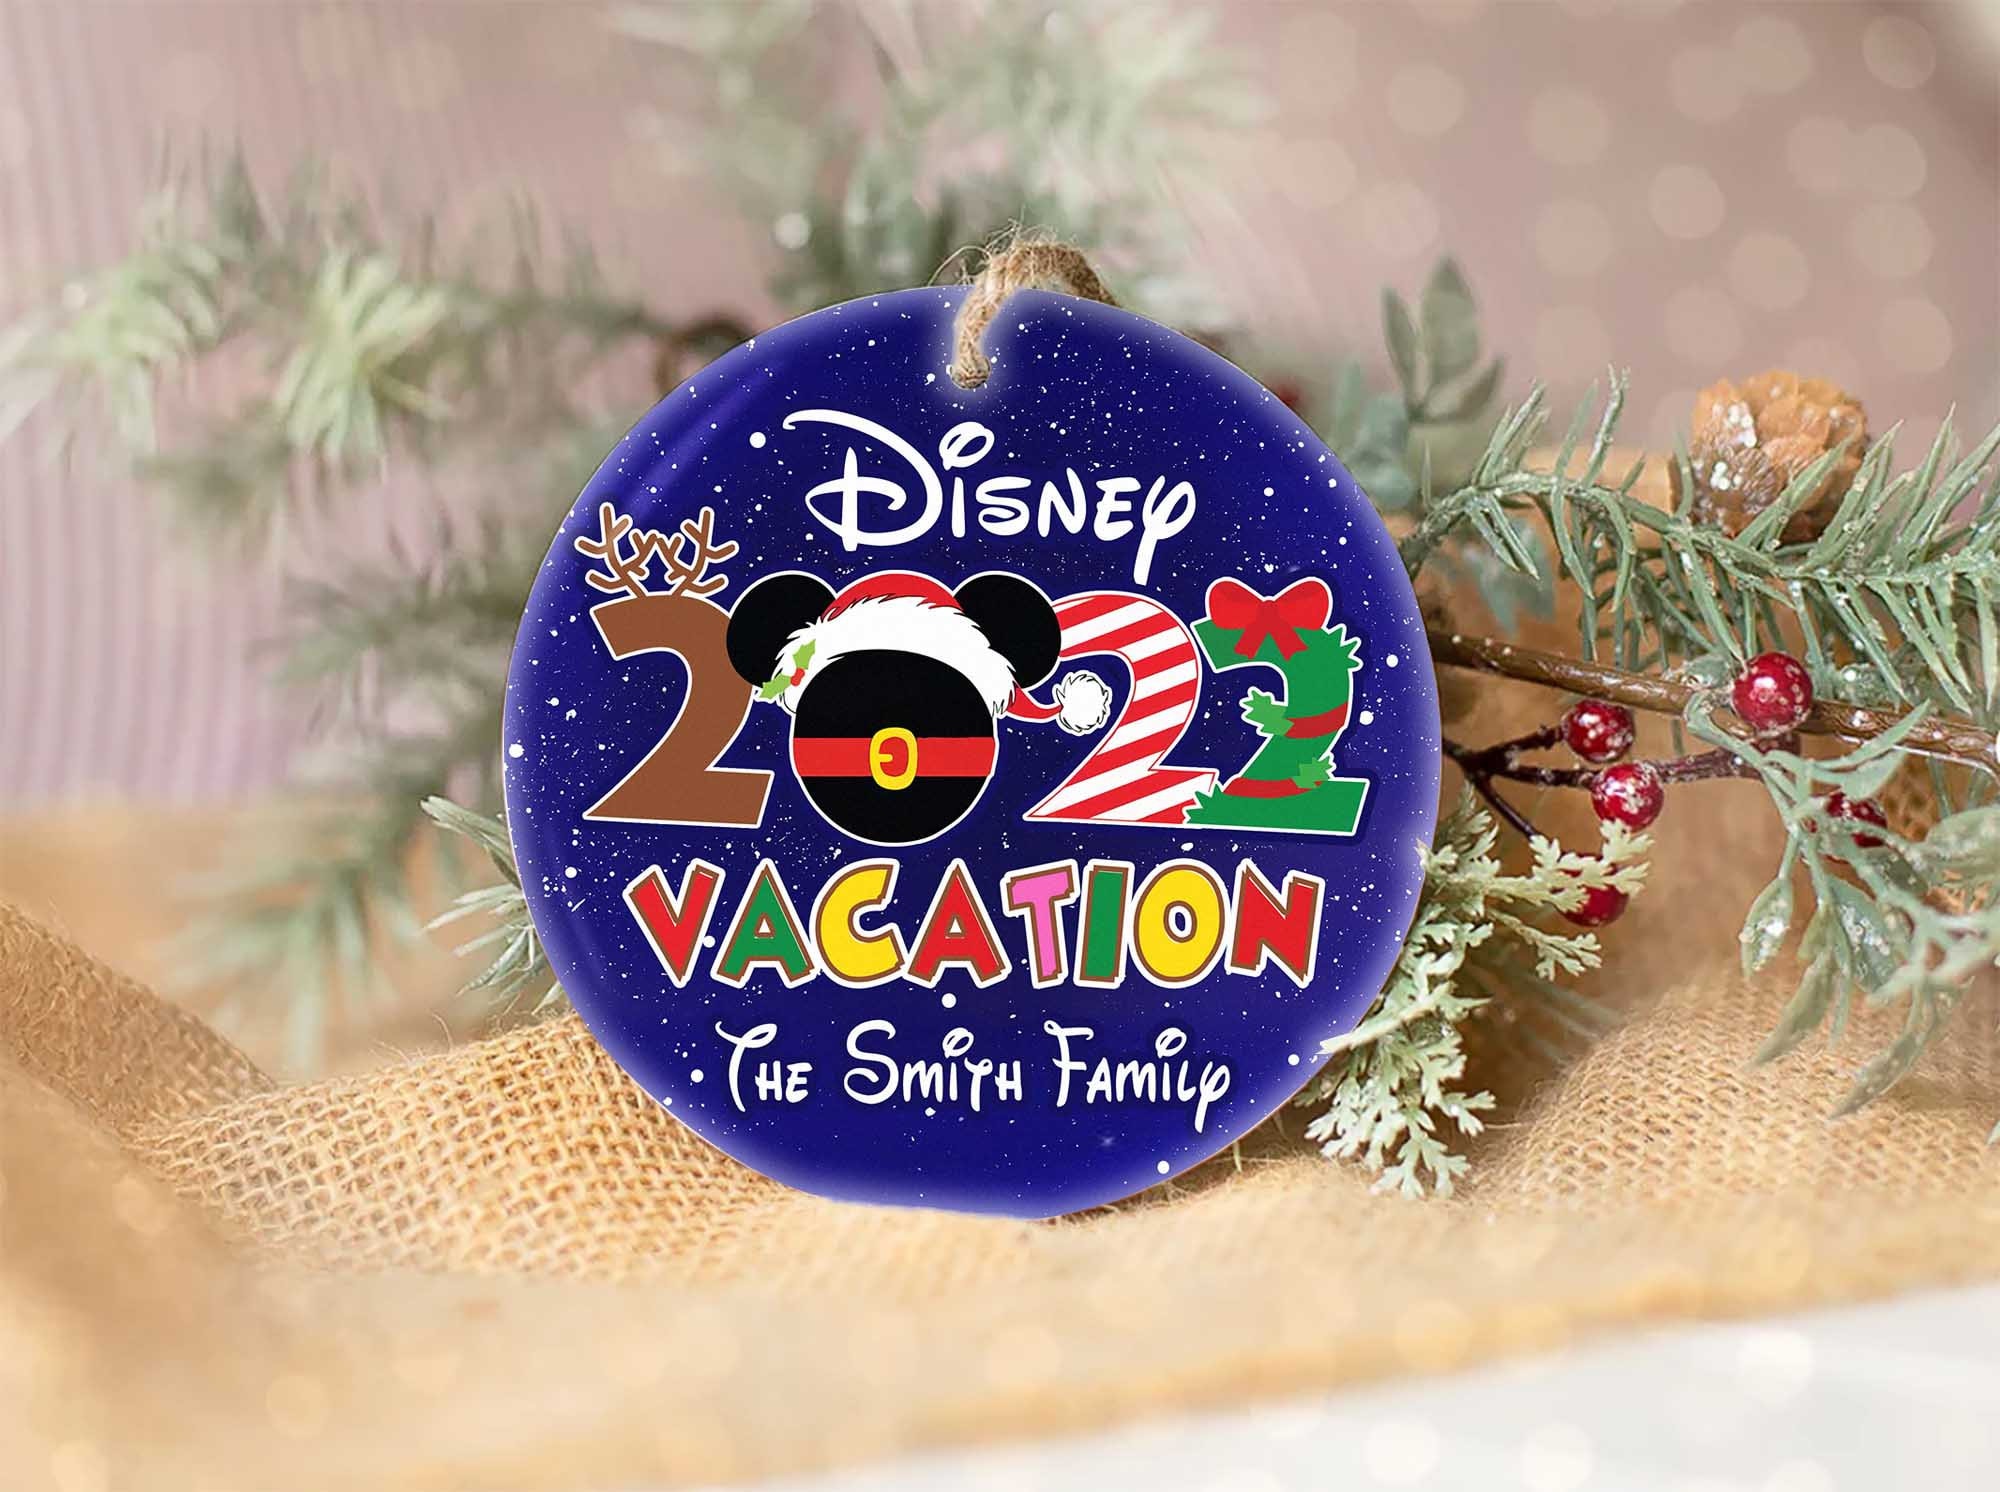 Disney Family vacations 2022 Ornament, Disney World Christmas Ornament, Disney Christmas